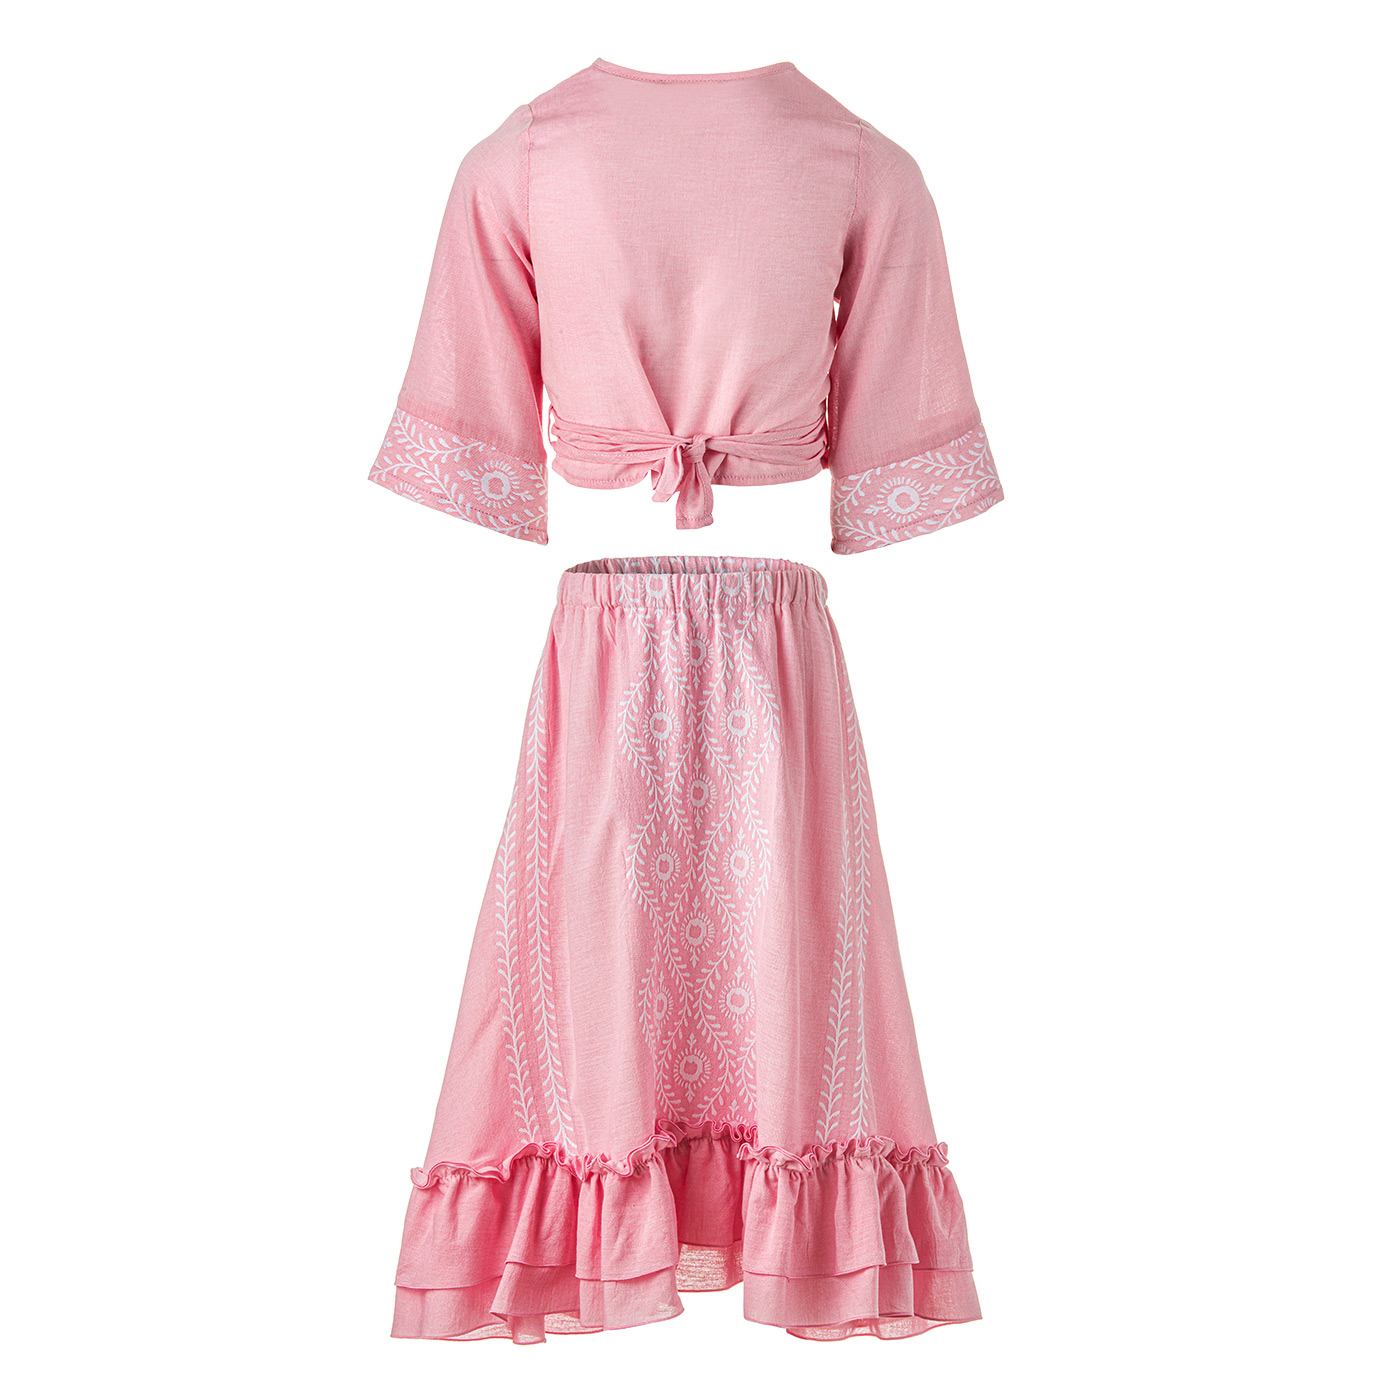 Παιδικό Σετ Μπλούζα & Φούστα Κεντημένο Ροζ